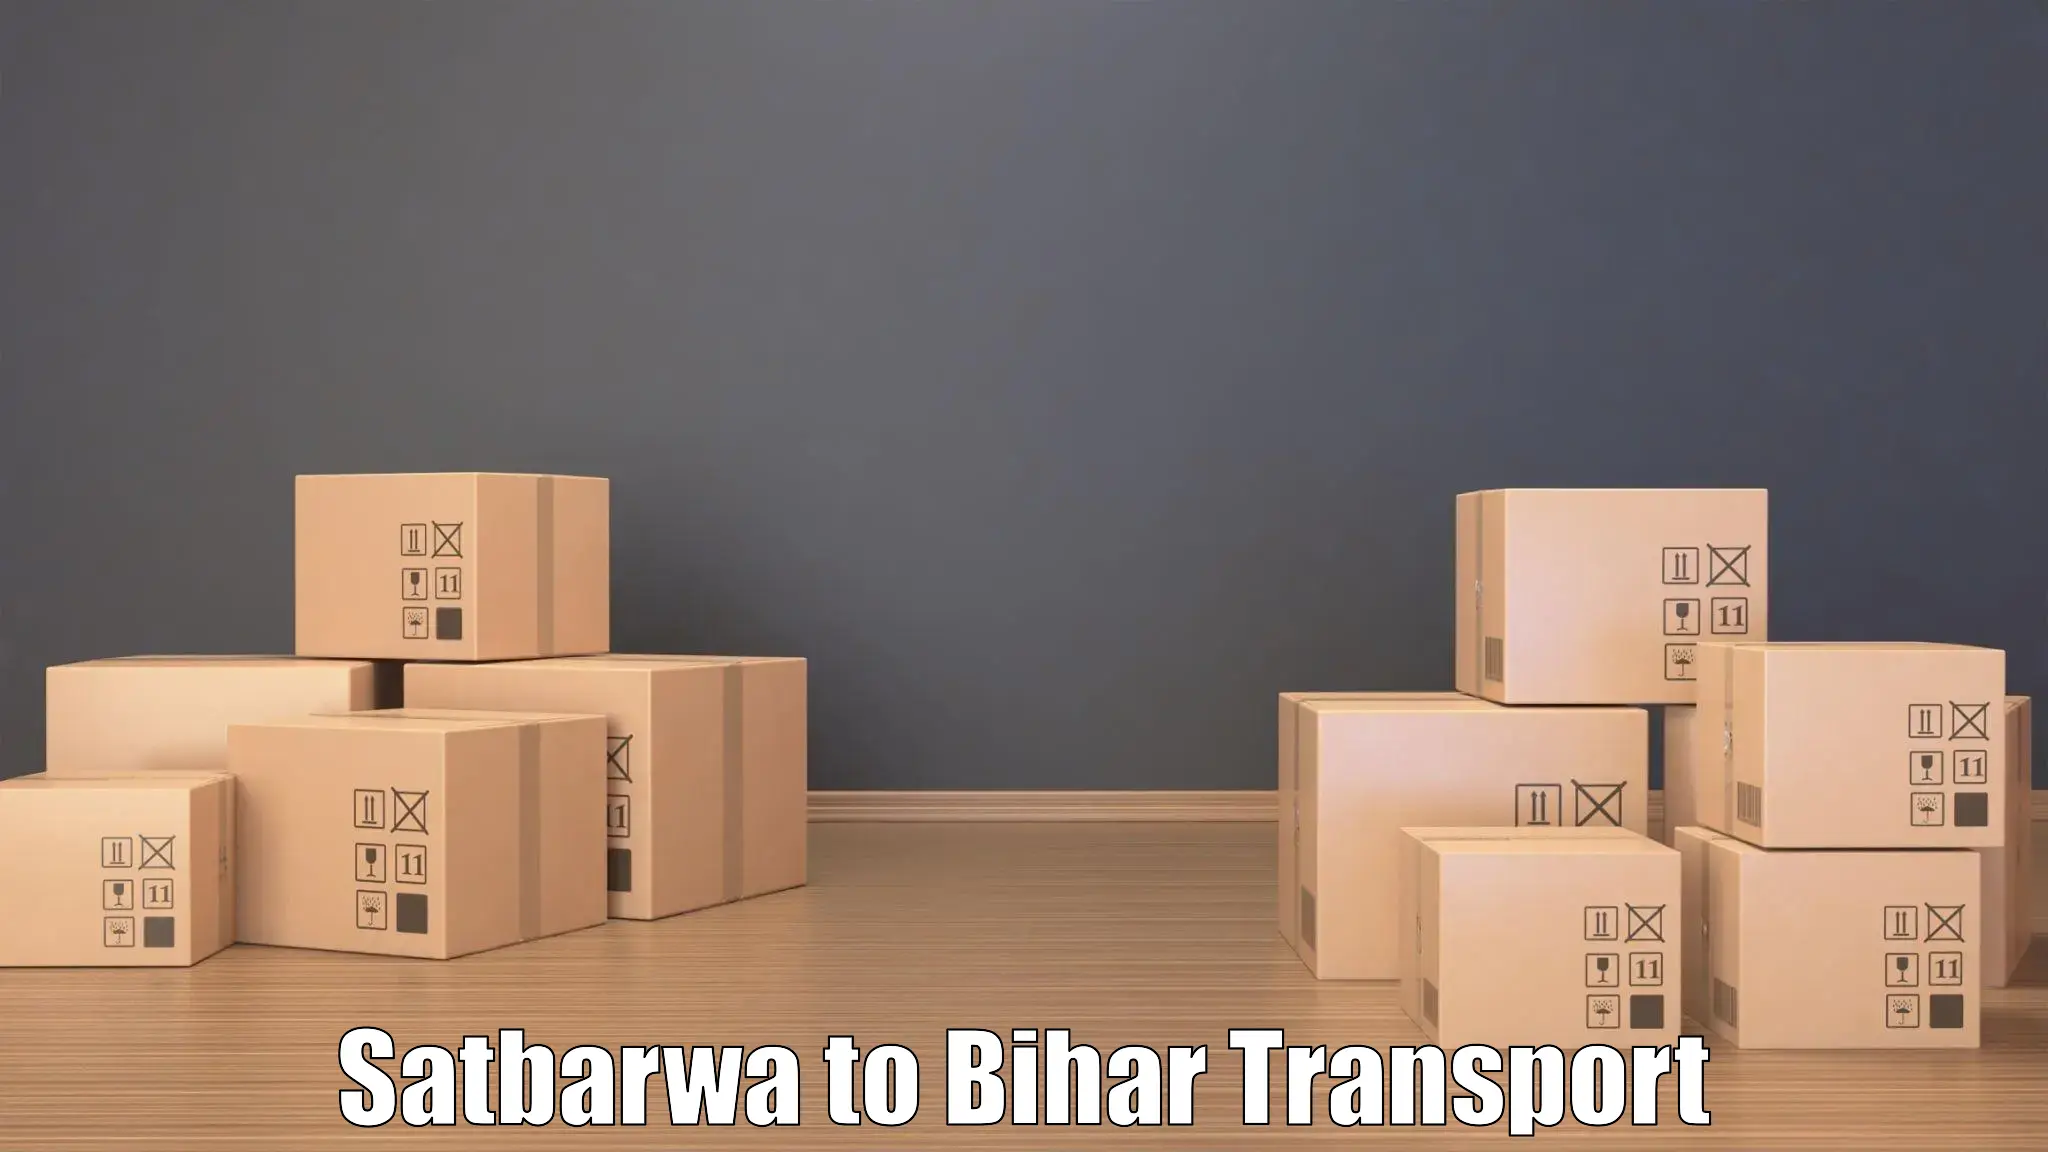 Bike shipping service Satbarwa to Mahaddipur